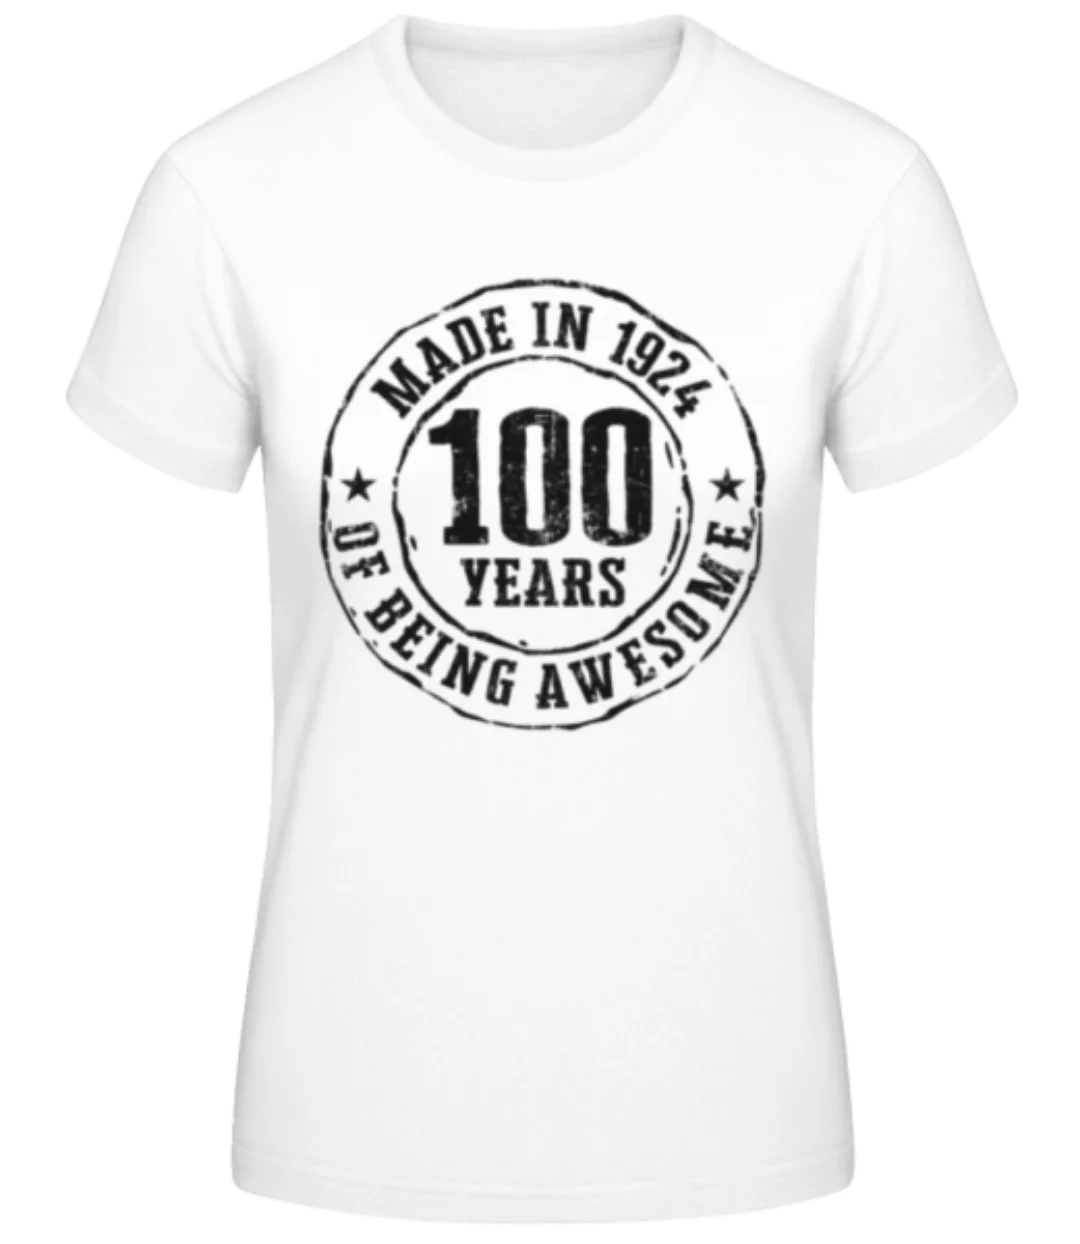 Made In 1924 · Frauen Basic T-Shirt günstig online kaufen